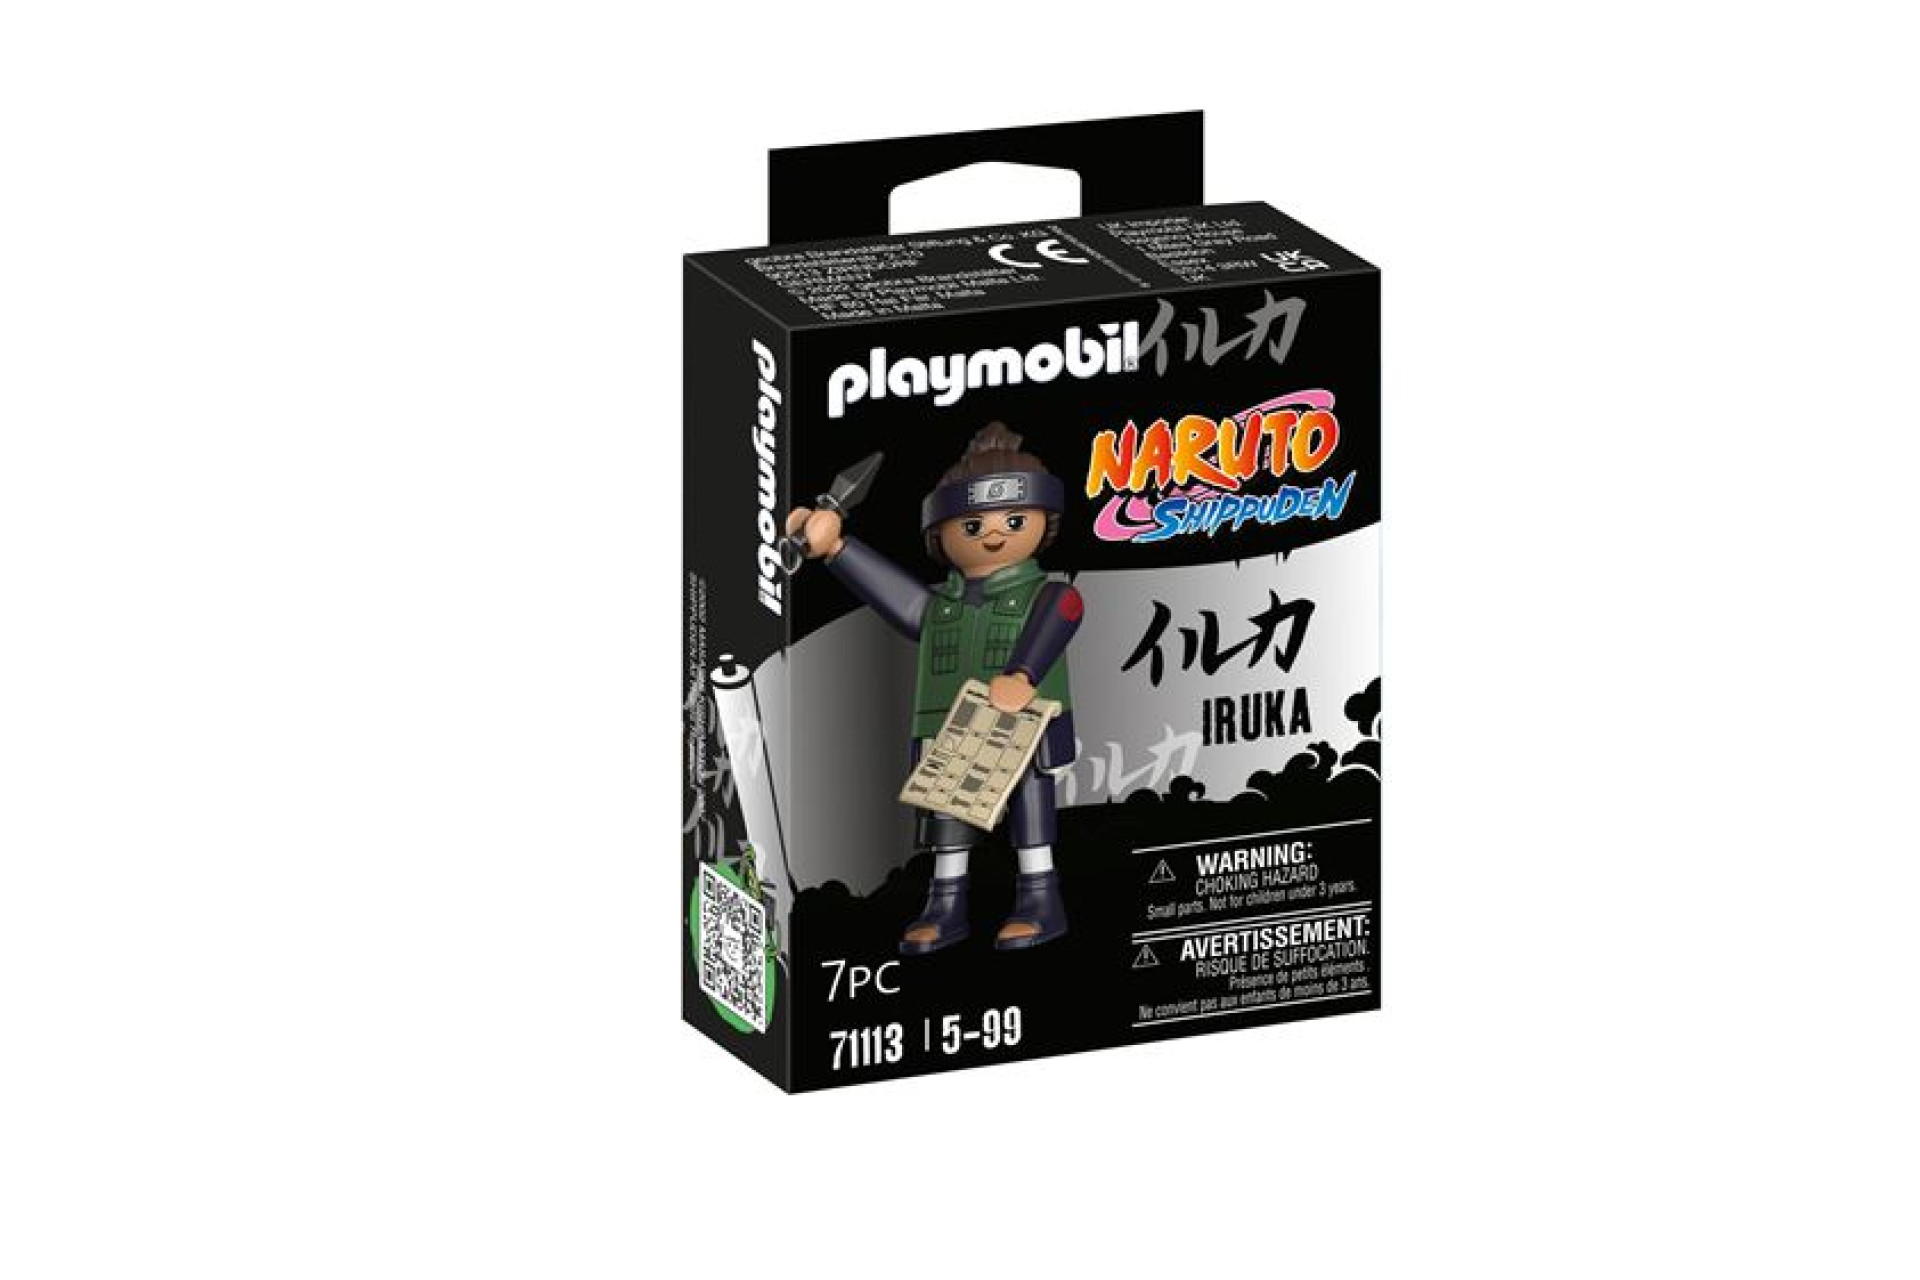 Acheter Playmobil Naruto 71113 Iruka